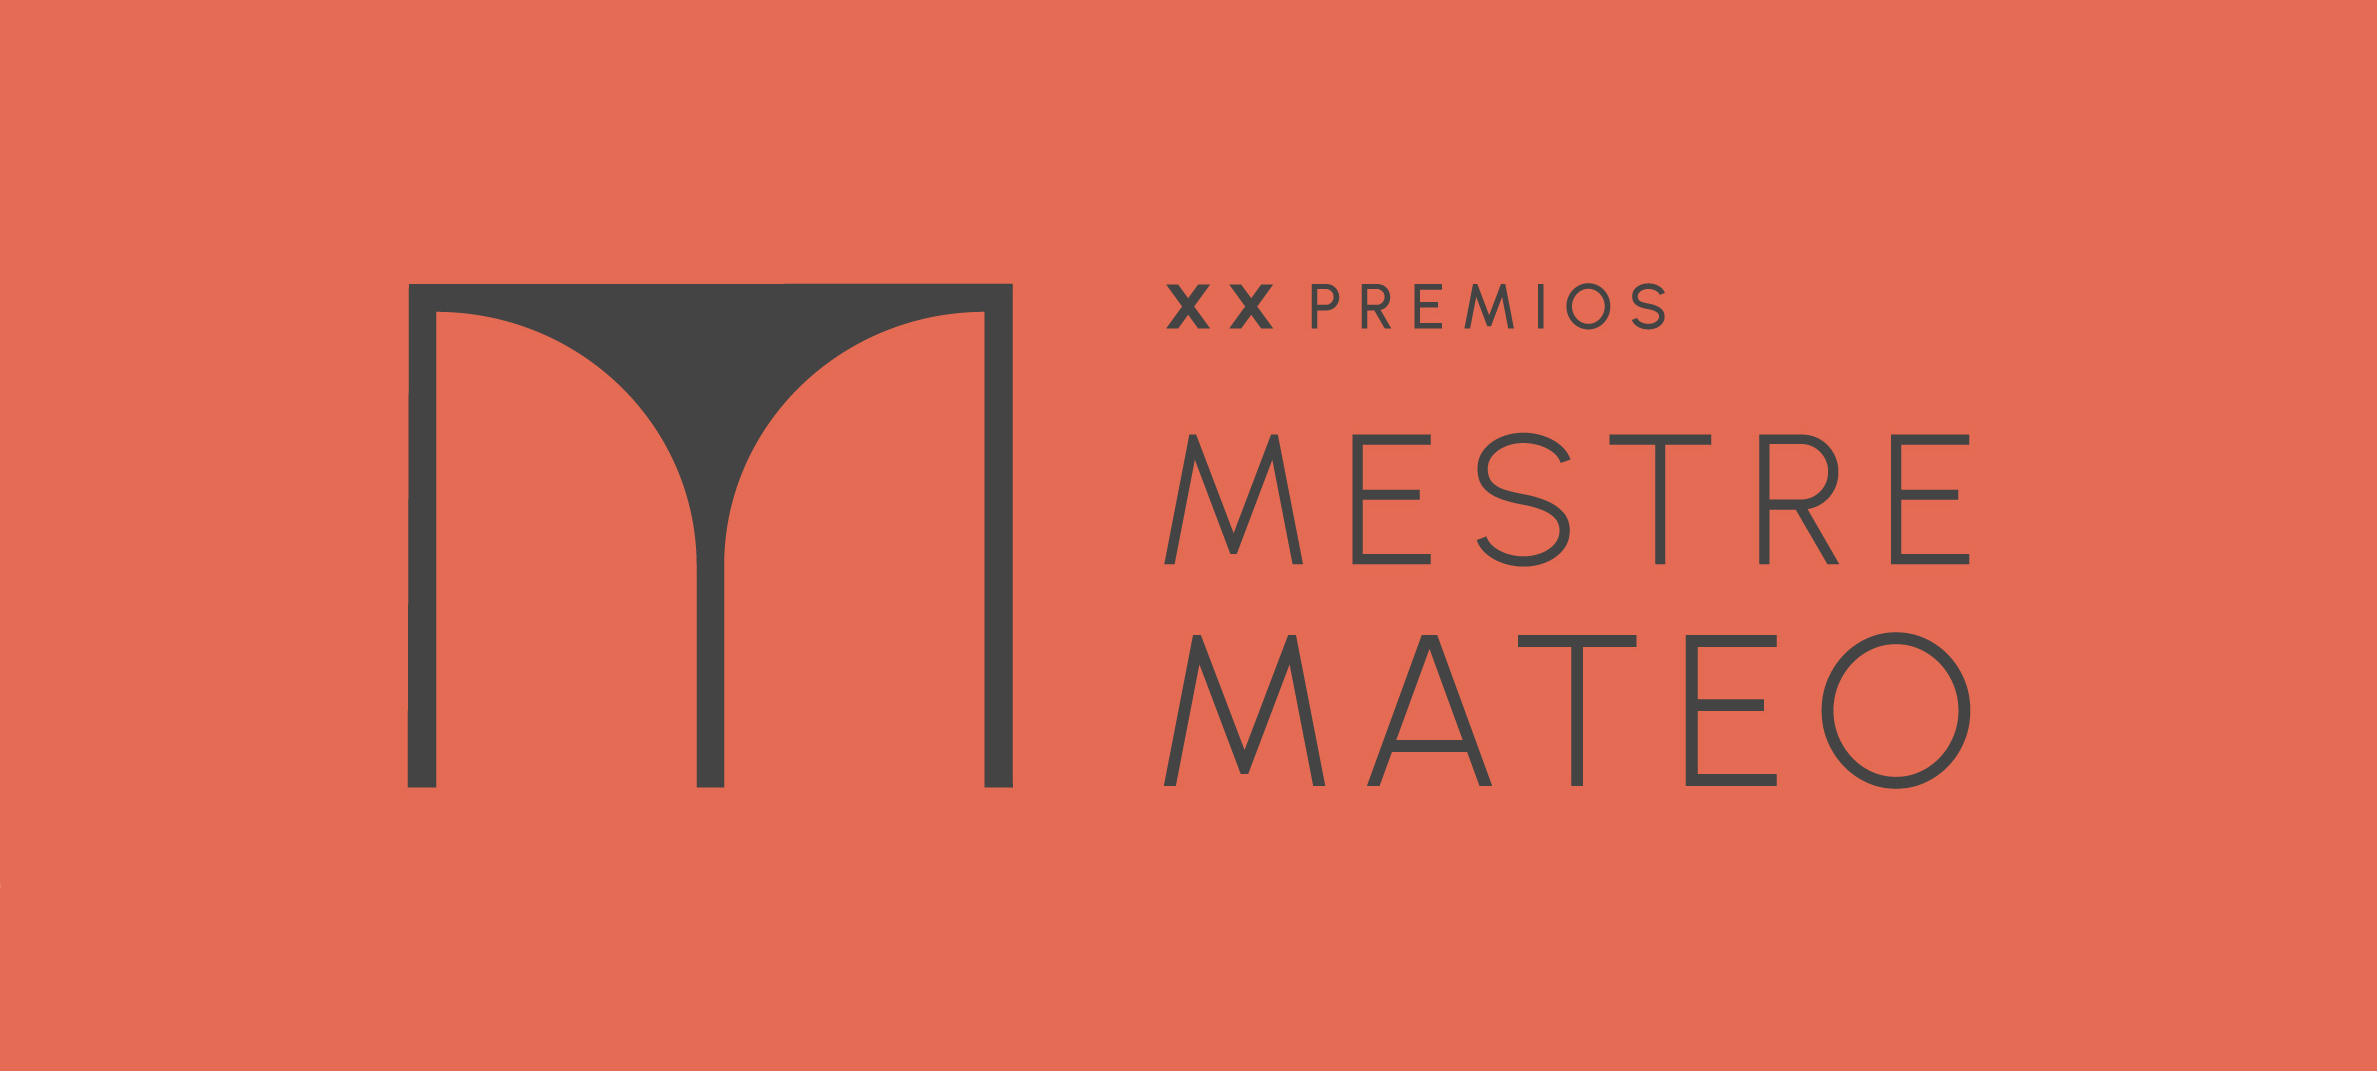 Presentamos nueva imagen y nueva web de los Premios Mestre Mateo